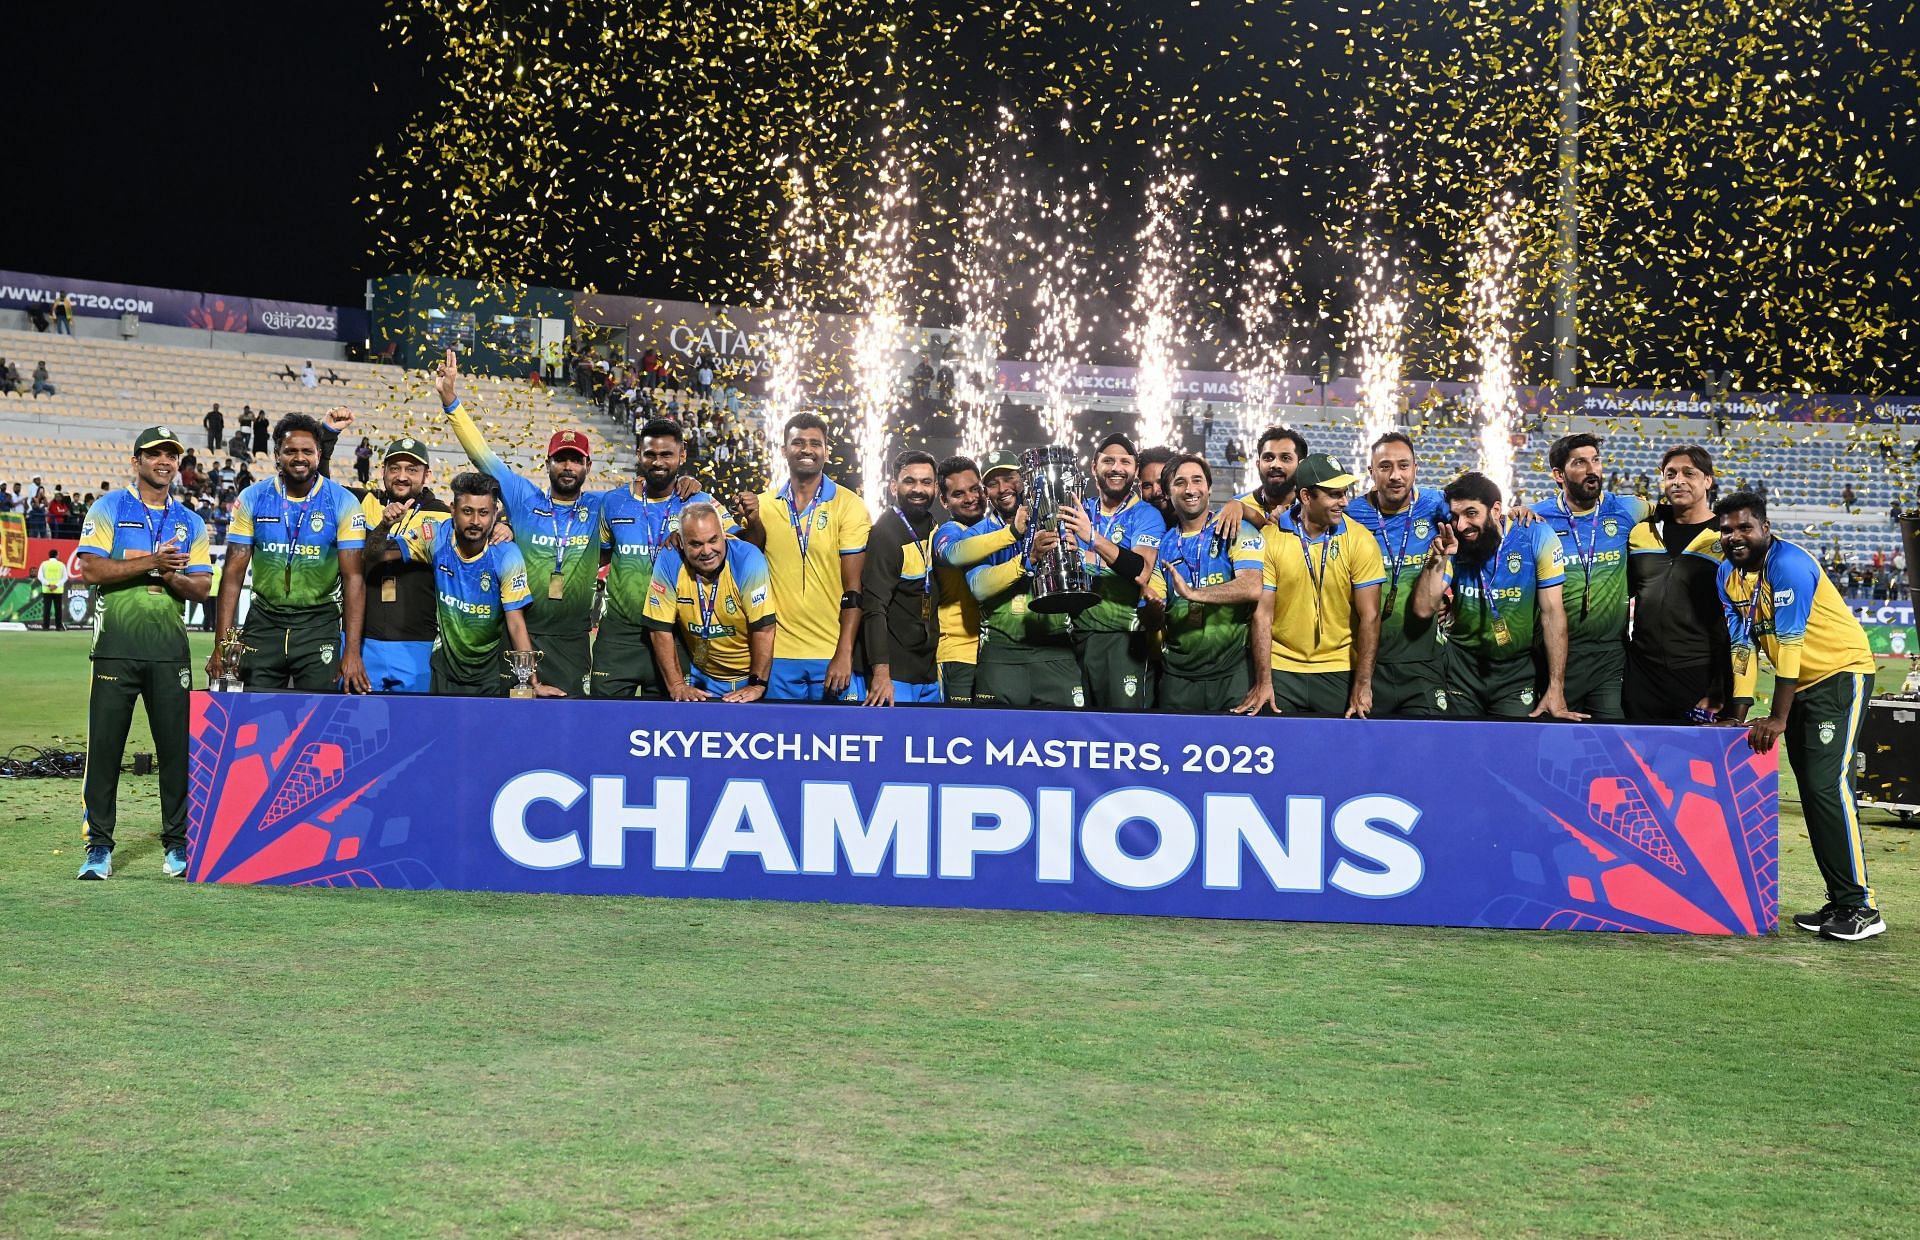 फाइनल में एशिया लायंस ने 7 विकेट से जीत दर्ज की 